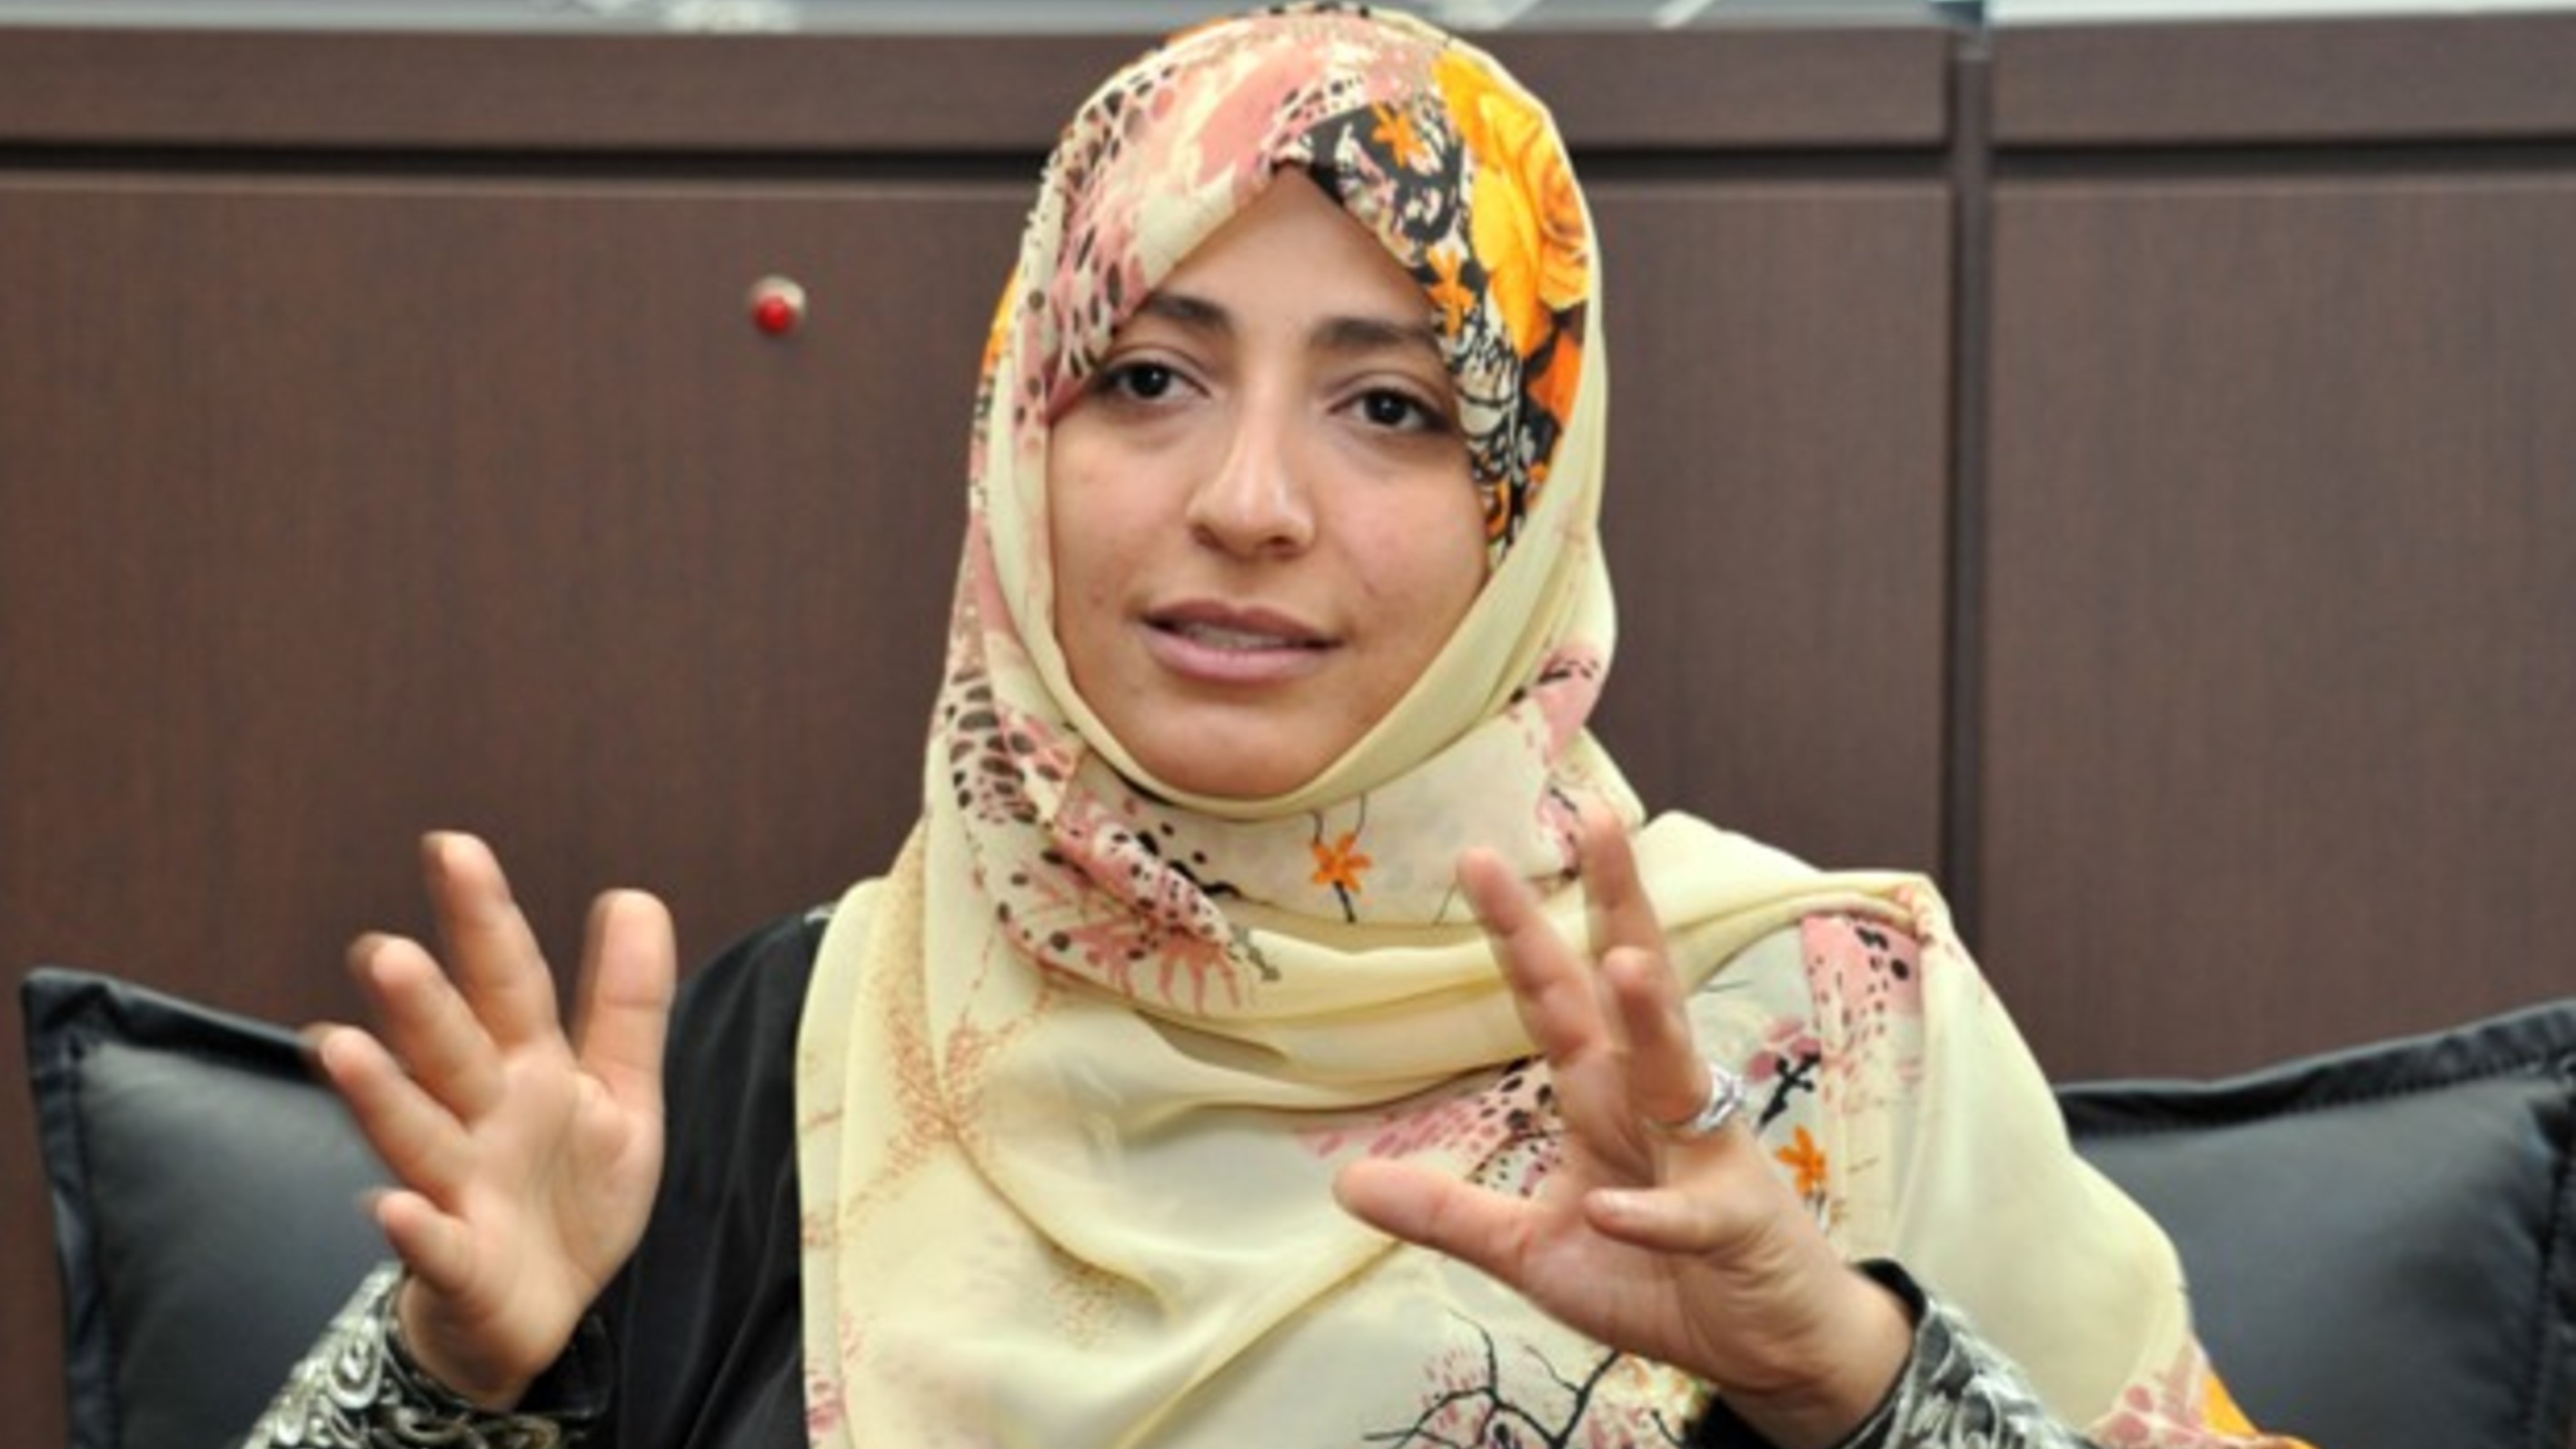 حوار الناشطة الحائزة على جائزة نوبل للسلام توكل كرمان مع عربي21 - الجزء الأول